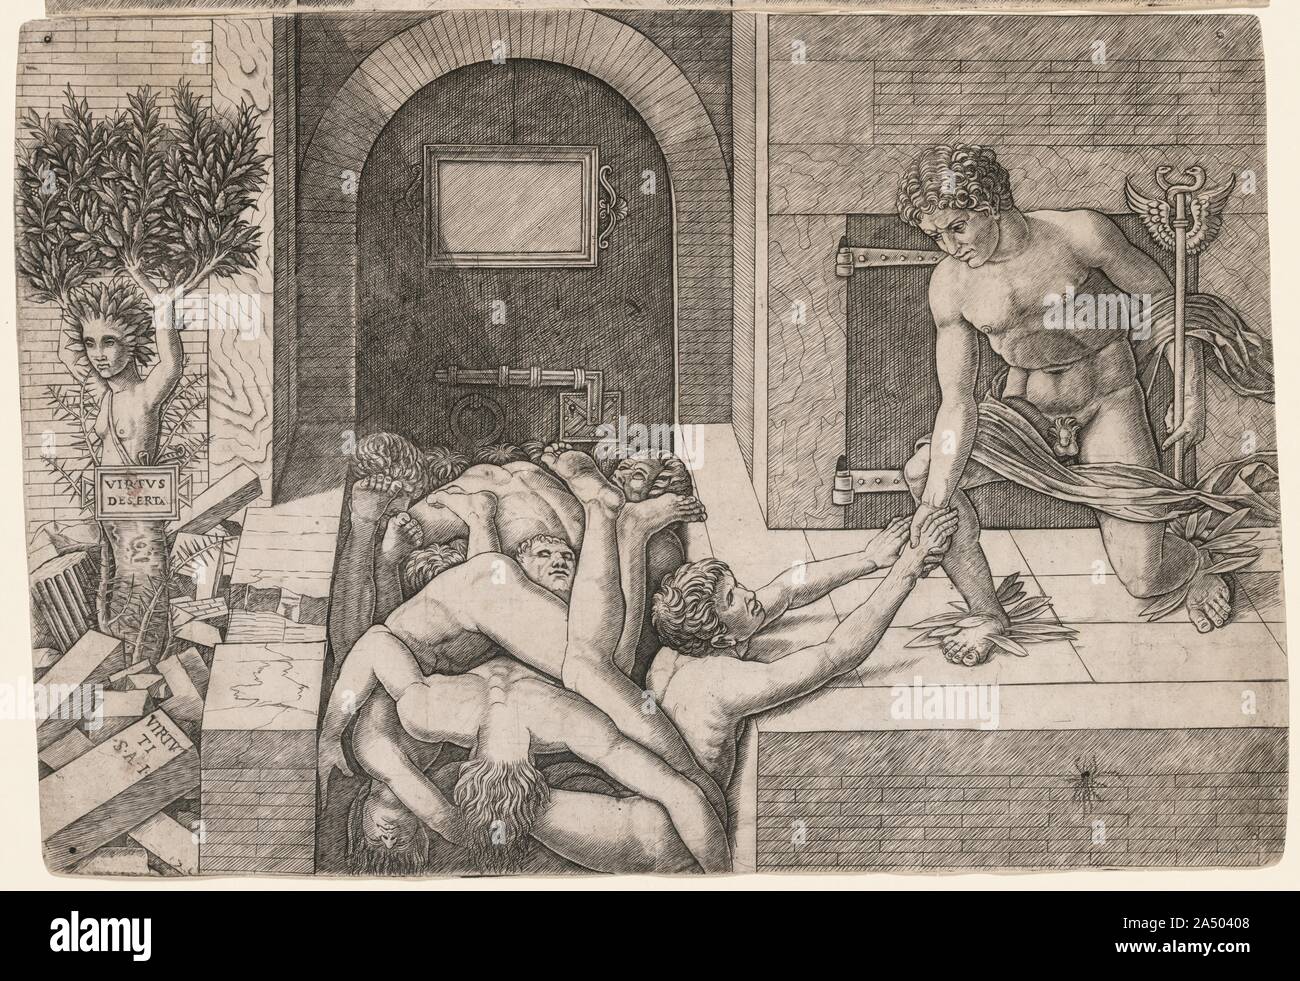 Allegorie auf die Rettung der Menschheit: Virtus Deserta, C. 1500-1505. Stockfoto